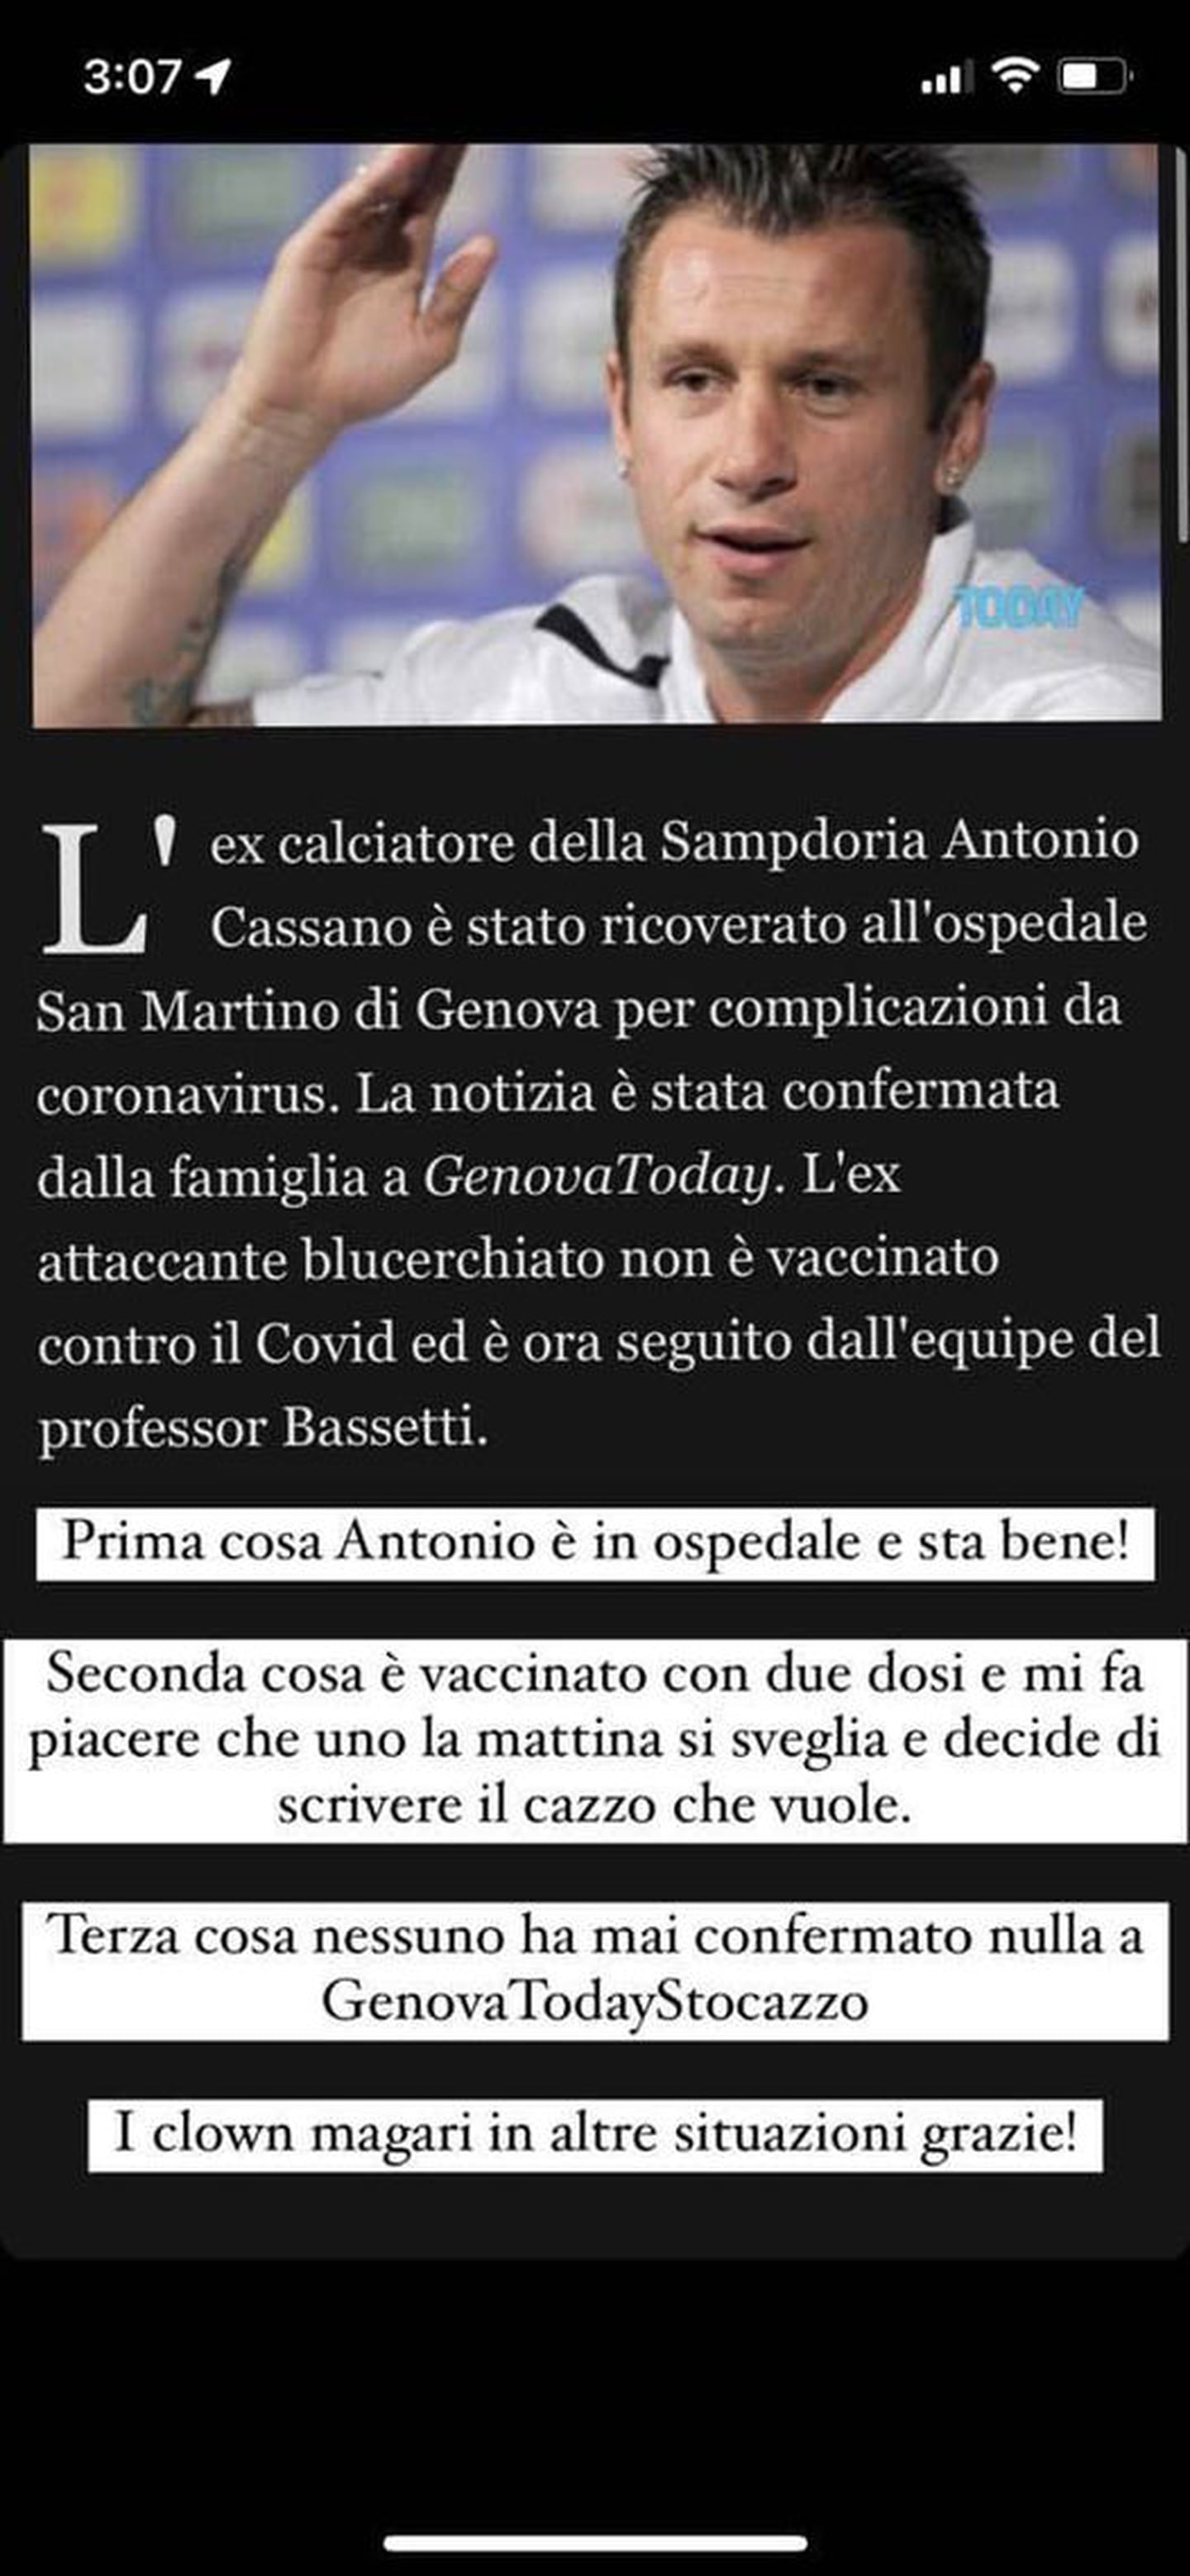 Antonio Cassano, hospitalizado pero en buen estado de salud por COVID-19